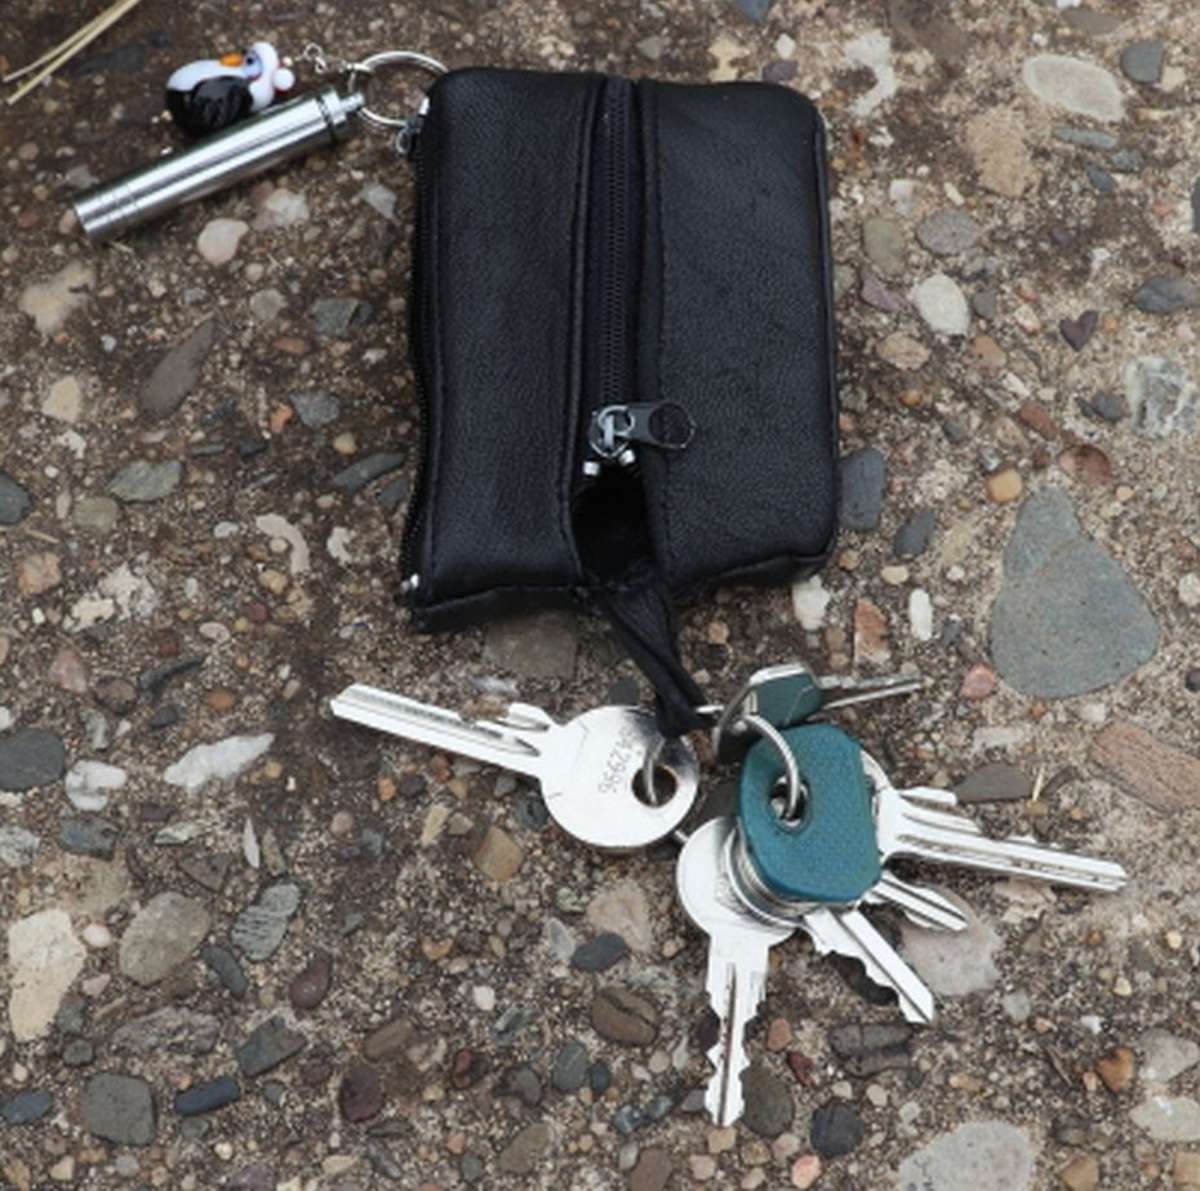 Diesen Schlüsselbund und Einkaufstrolley fand die Polizei in Zusammenhang mit einer toten Frau, die im Main-Donau-Kanal gefunden wurde.